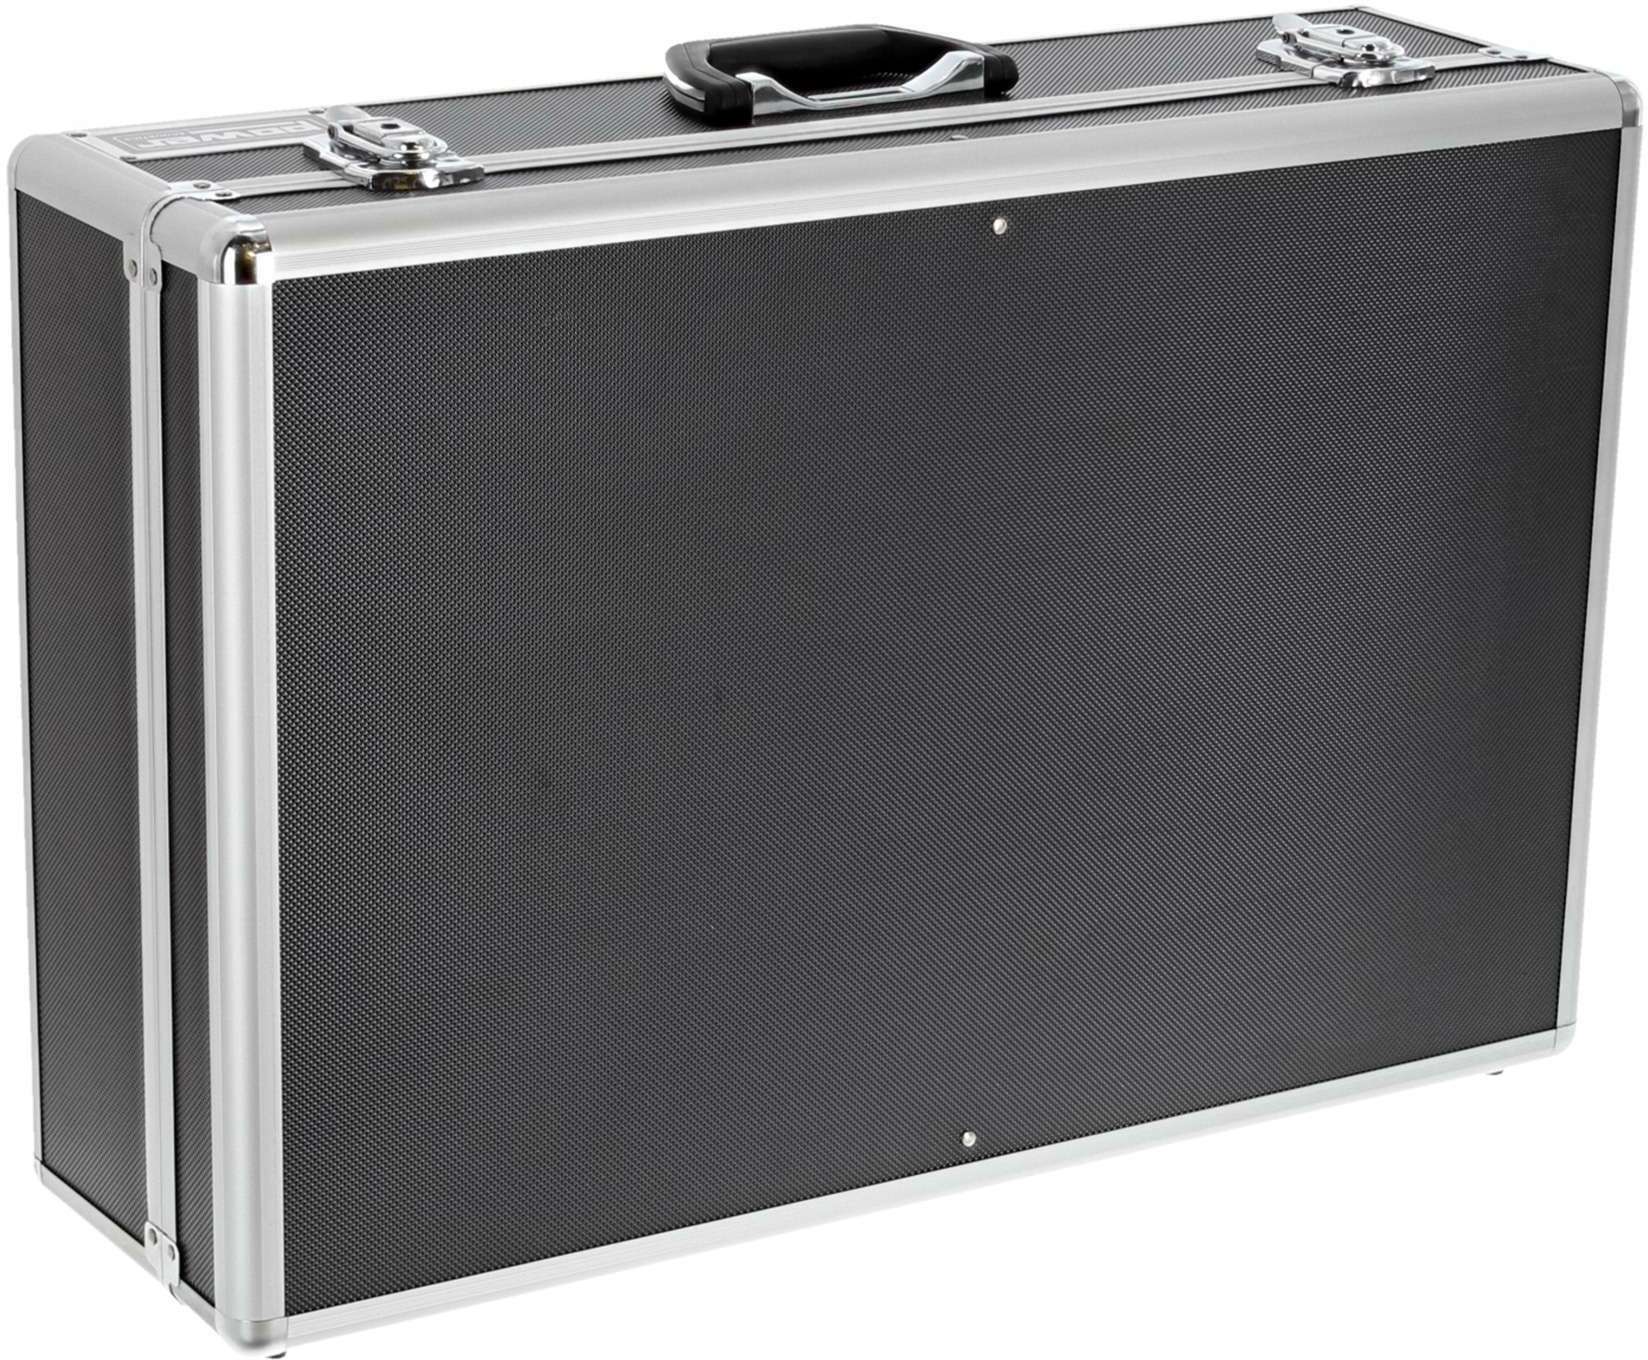 Power Acoustics Fl Mixer 4 Valise De Transport Pour Mixeur - Mixer case - Main picture